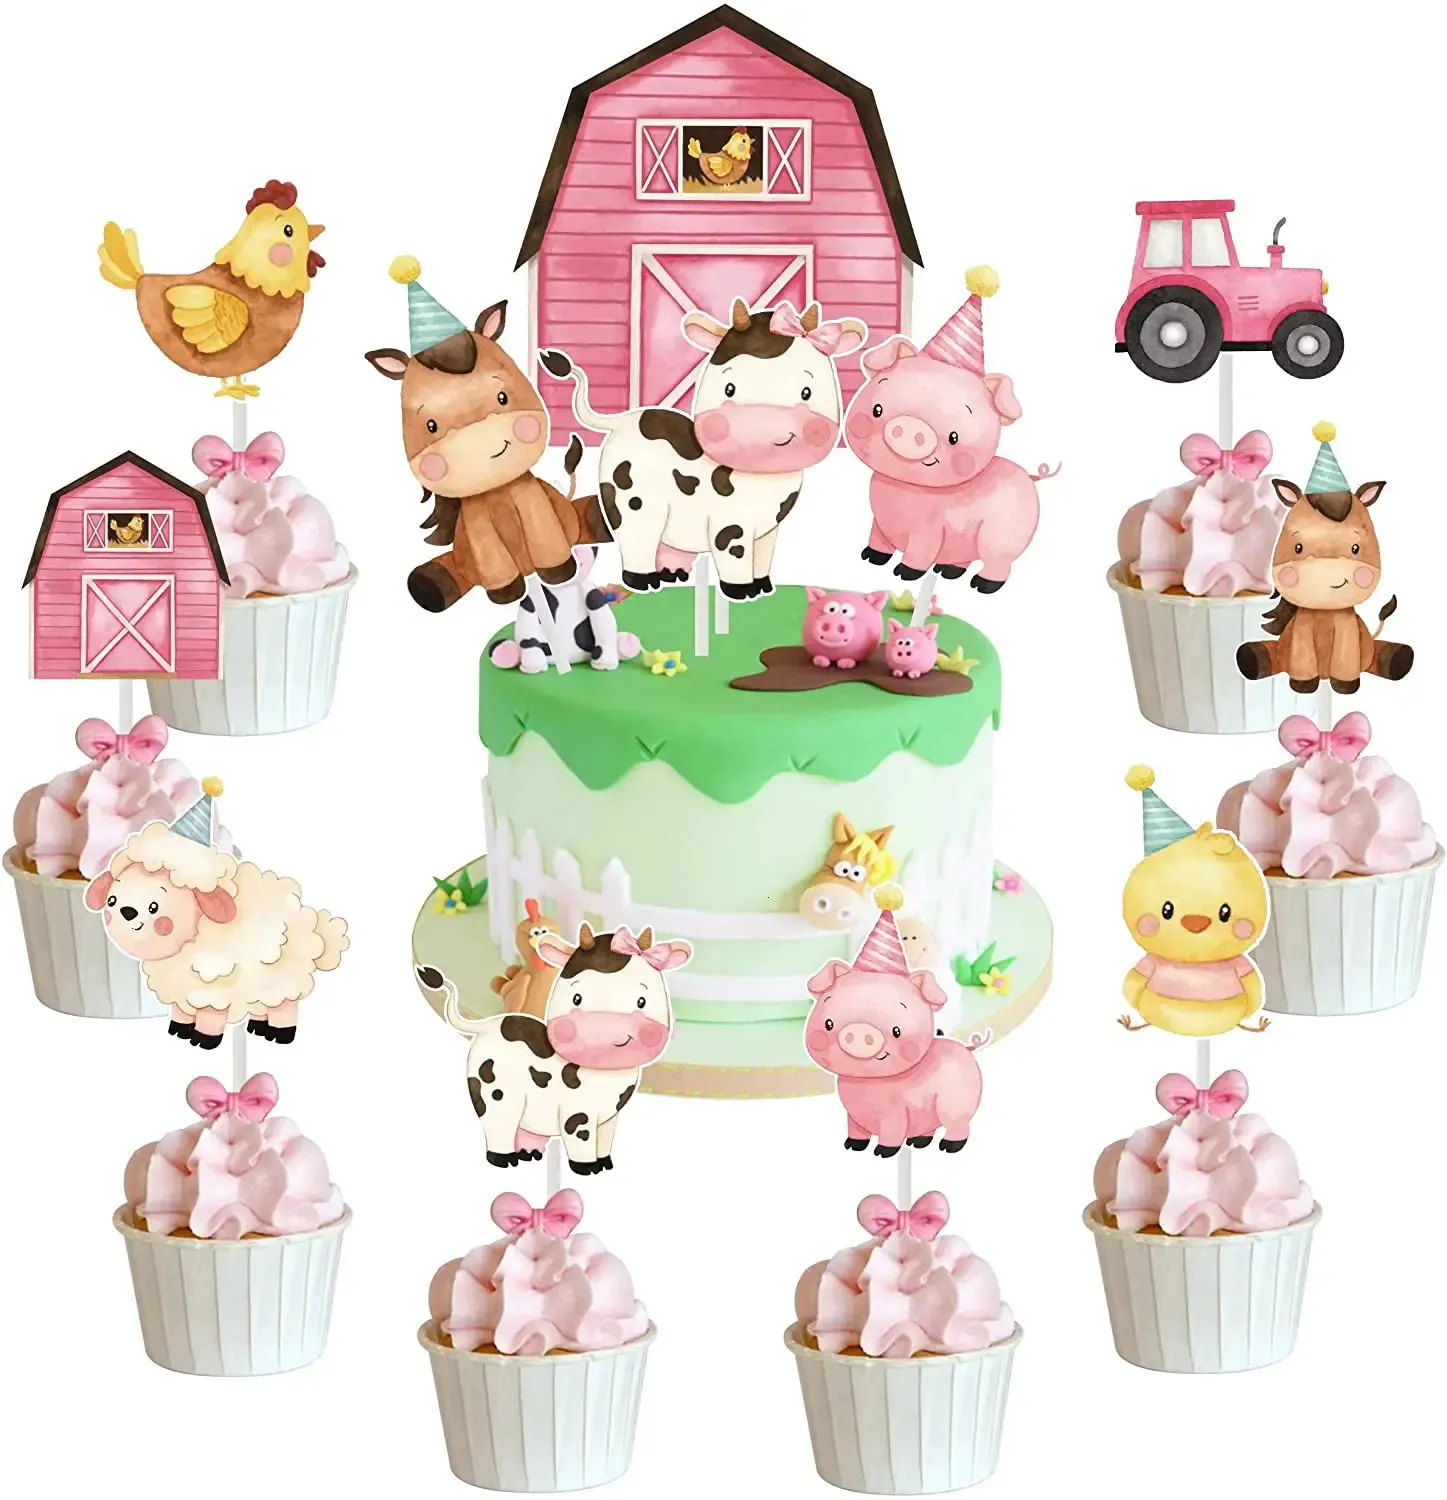 Cake Tools Rosa Bauernhoftiere, Geburtstagskuchendekorationen, Bauernhoftiere-Themen-Kuchen-/Cupcake-Topper für Mädchen, Babyparty, Geburtstagsparty-Zubehör, 231129